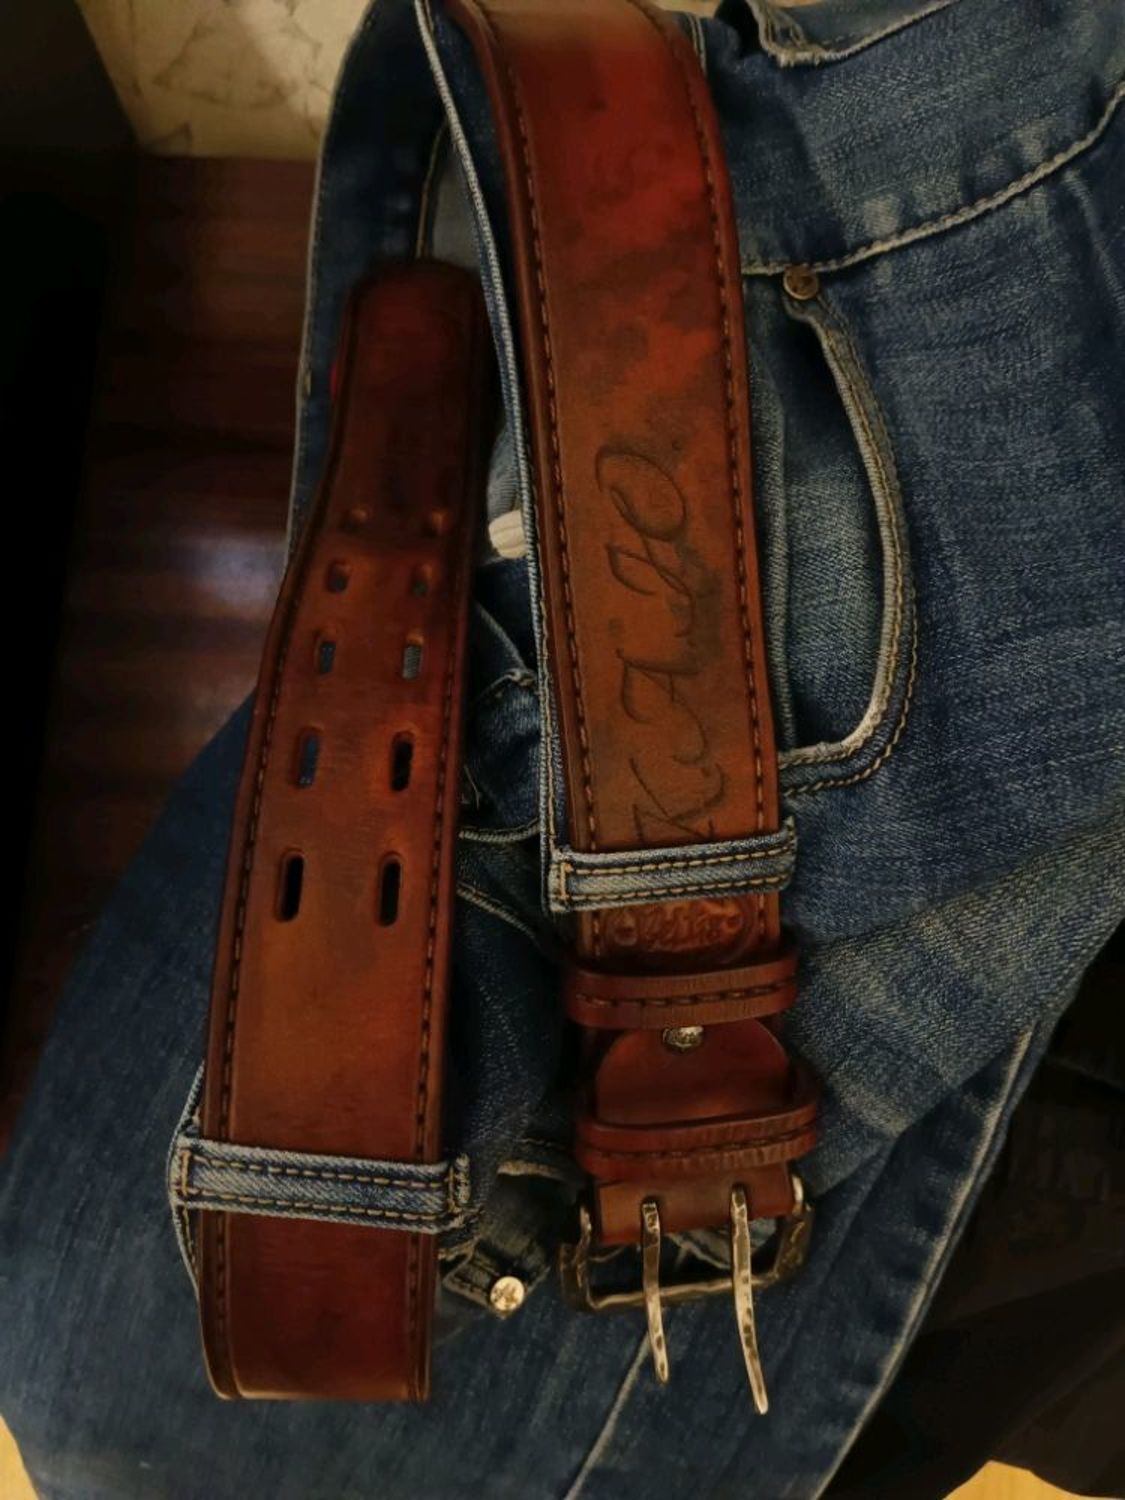 Фото №1 к отзыву покупателя Лена Клевцова о товаре Ремни для джинсов мужские широкие 50 мм